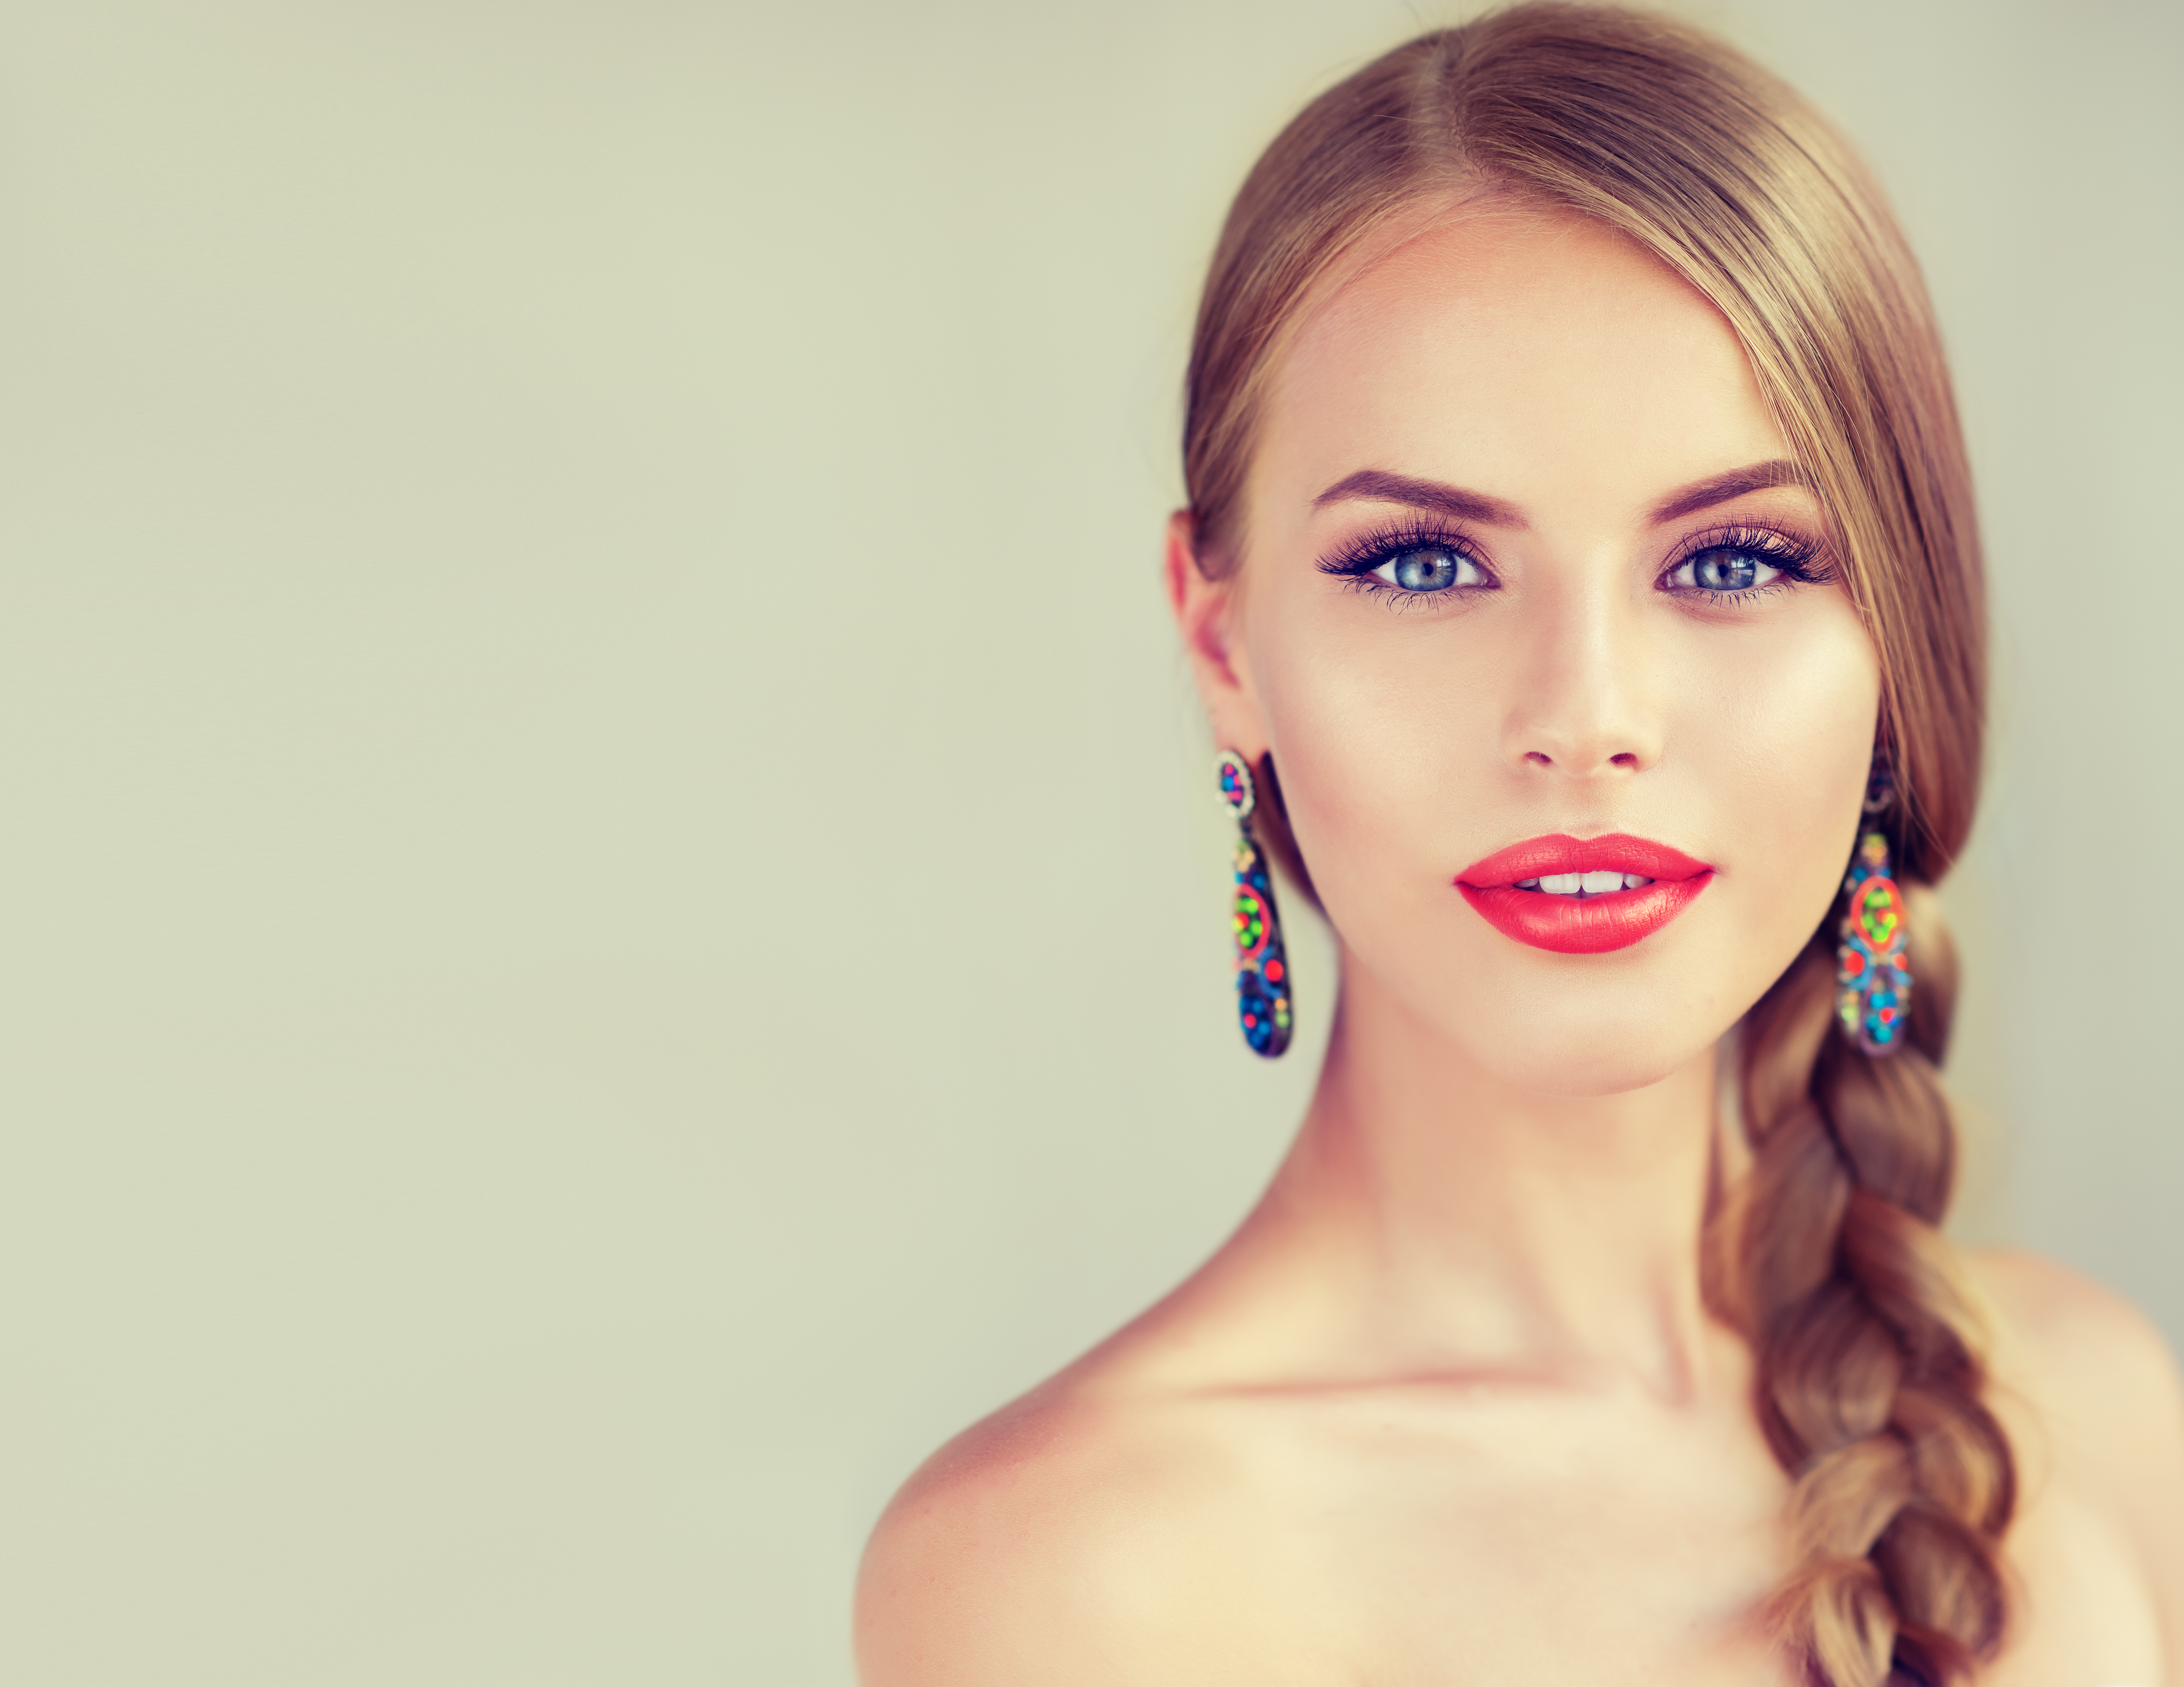 Free download wallpaper Blonde, Model, Women, Earrings, Makeup, Blue Eyes, Braid, Lipstick on your PC desktop